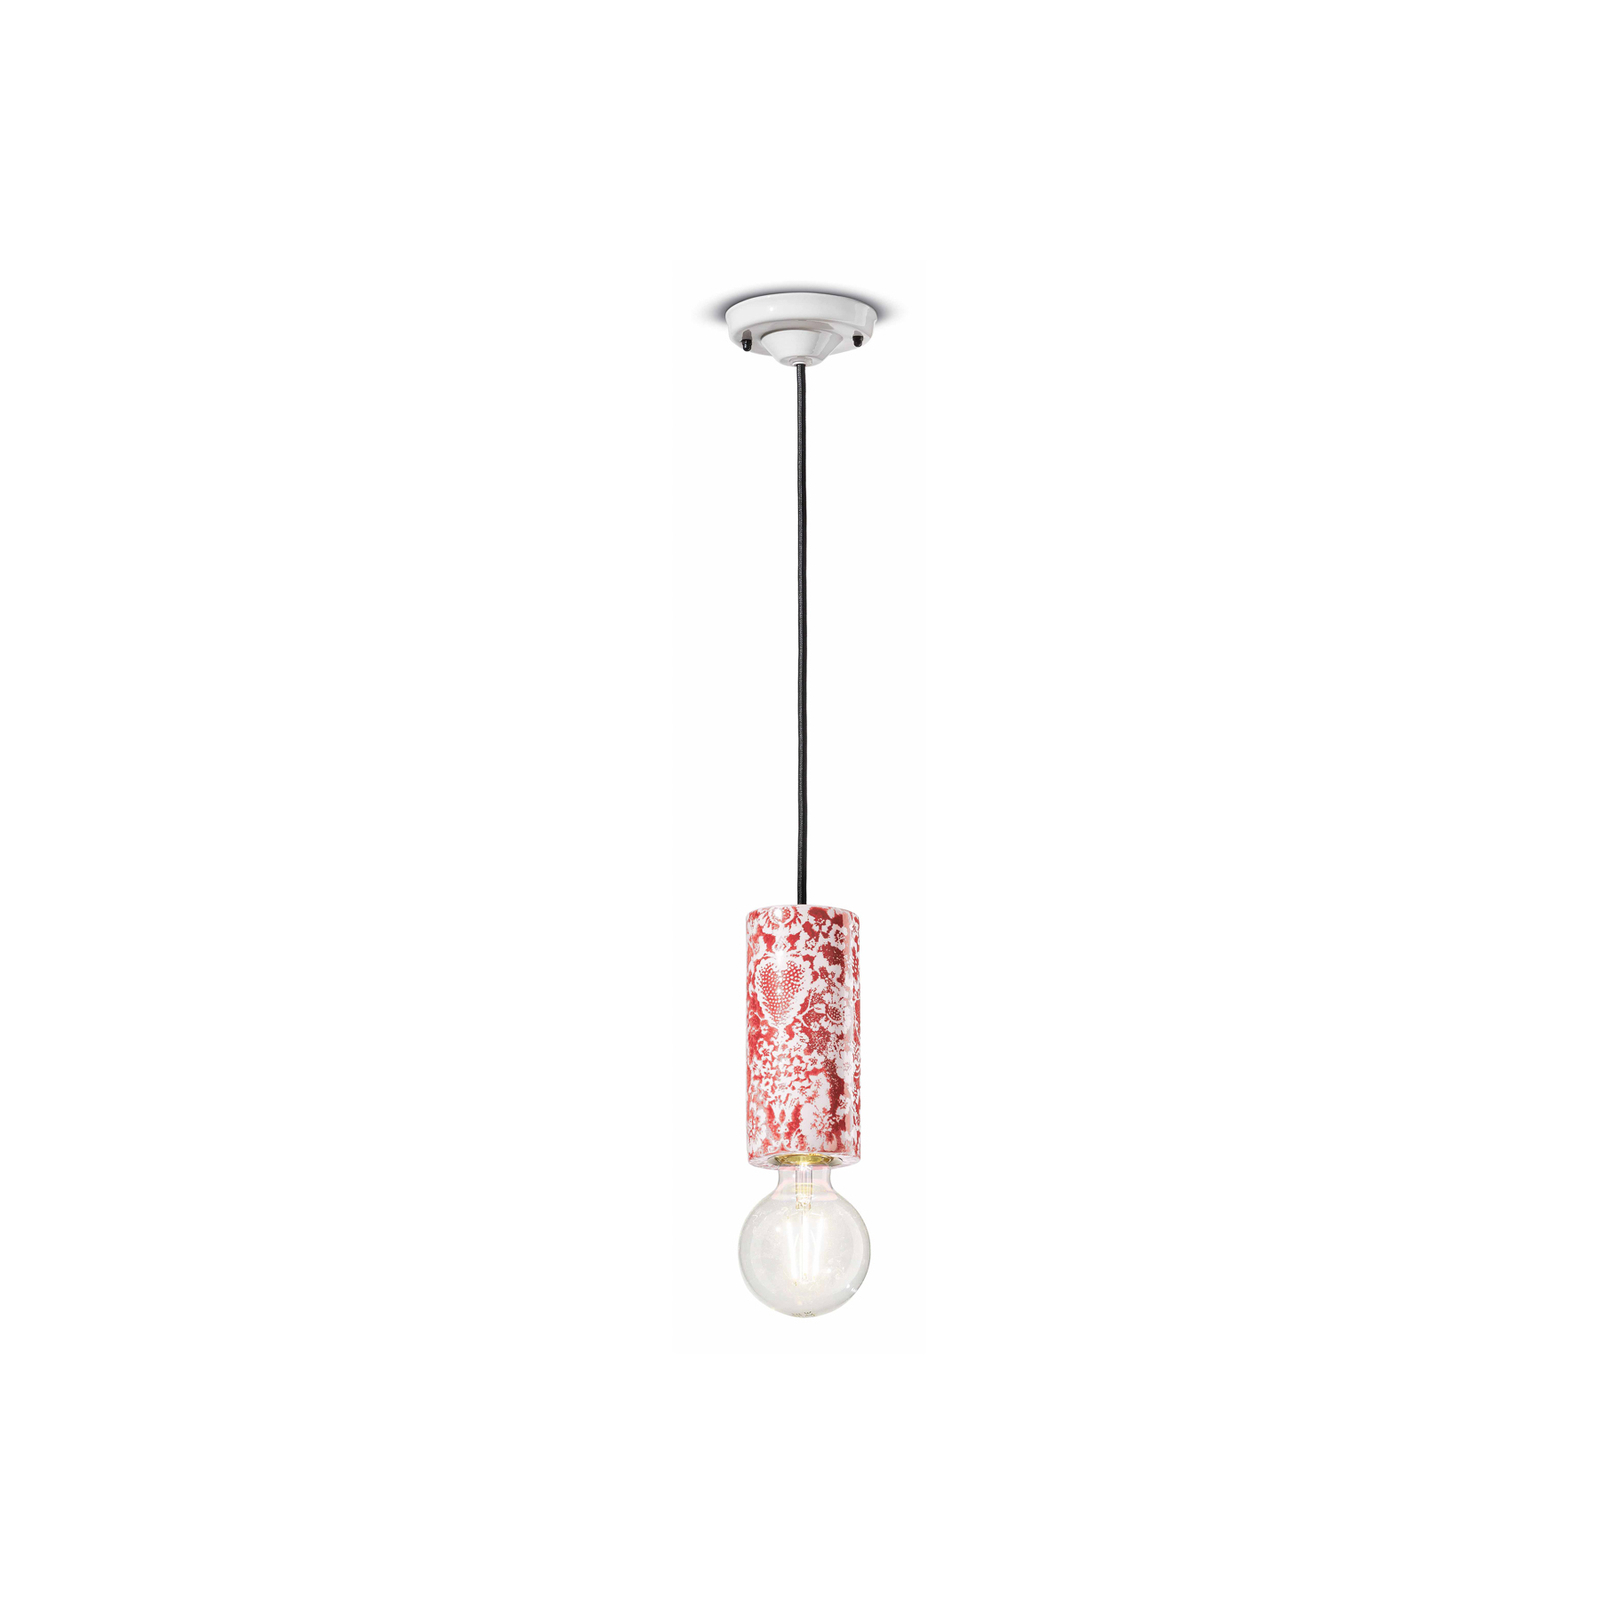 PI závesná lampa, kvetinový vzor Ø 8 cm červená/biela